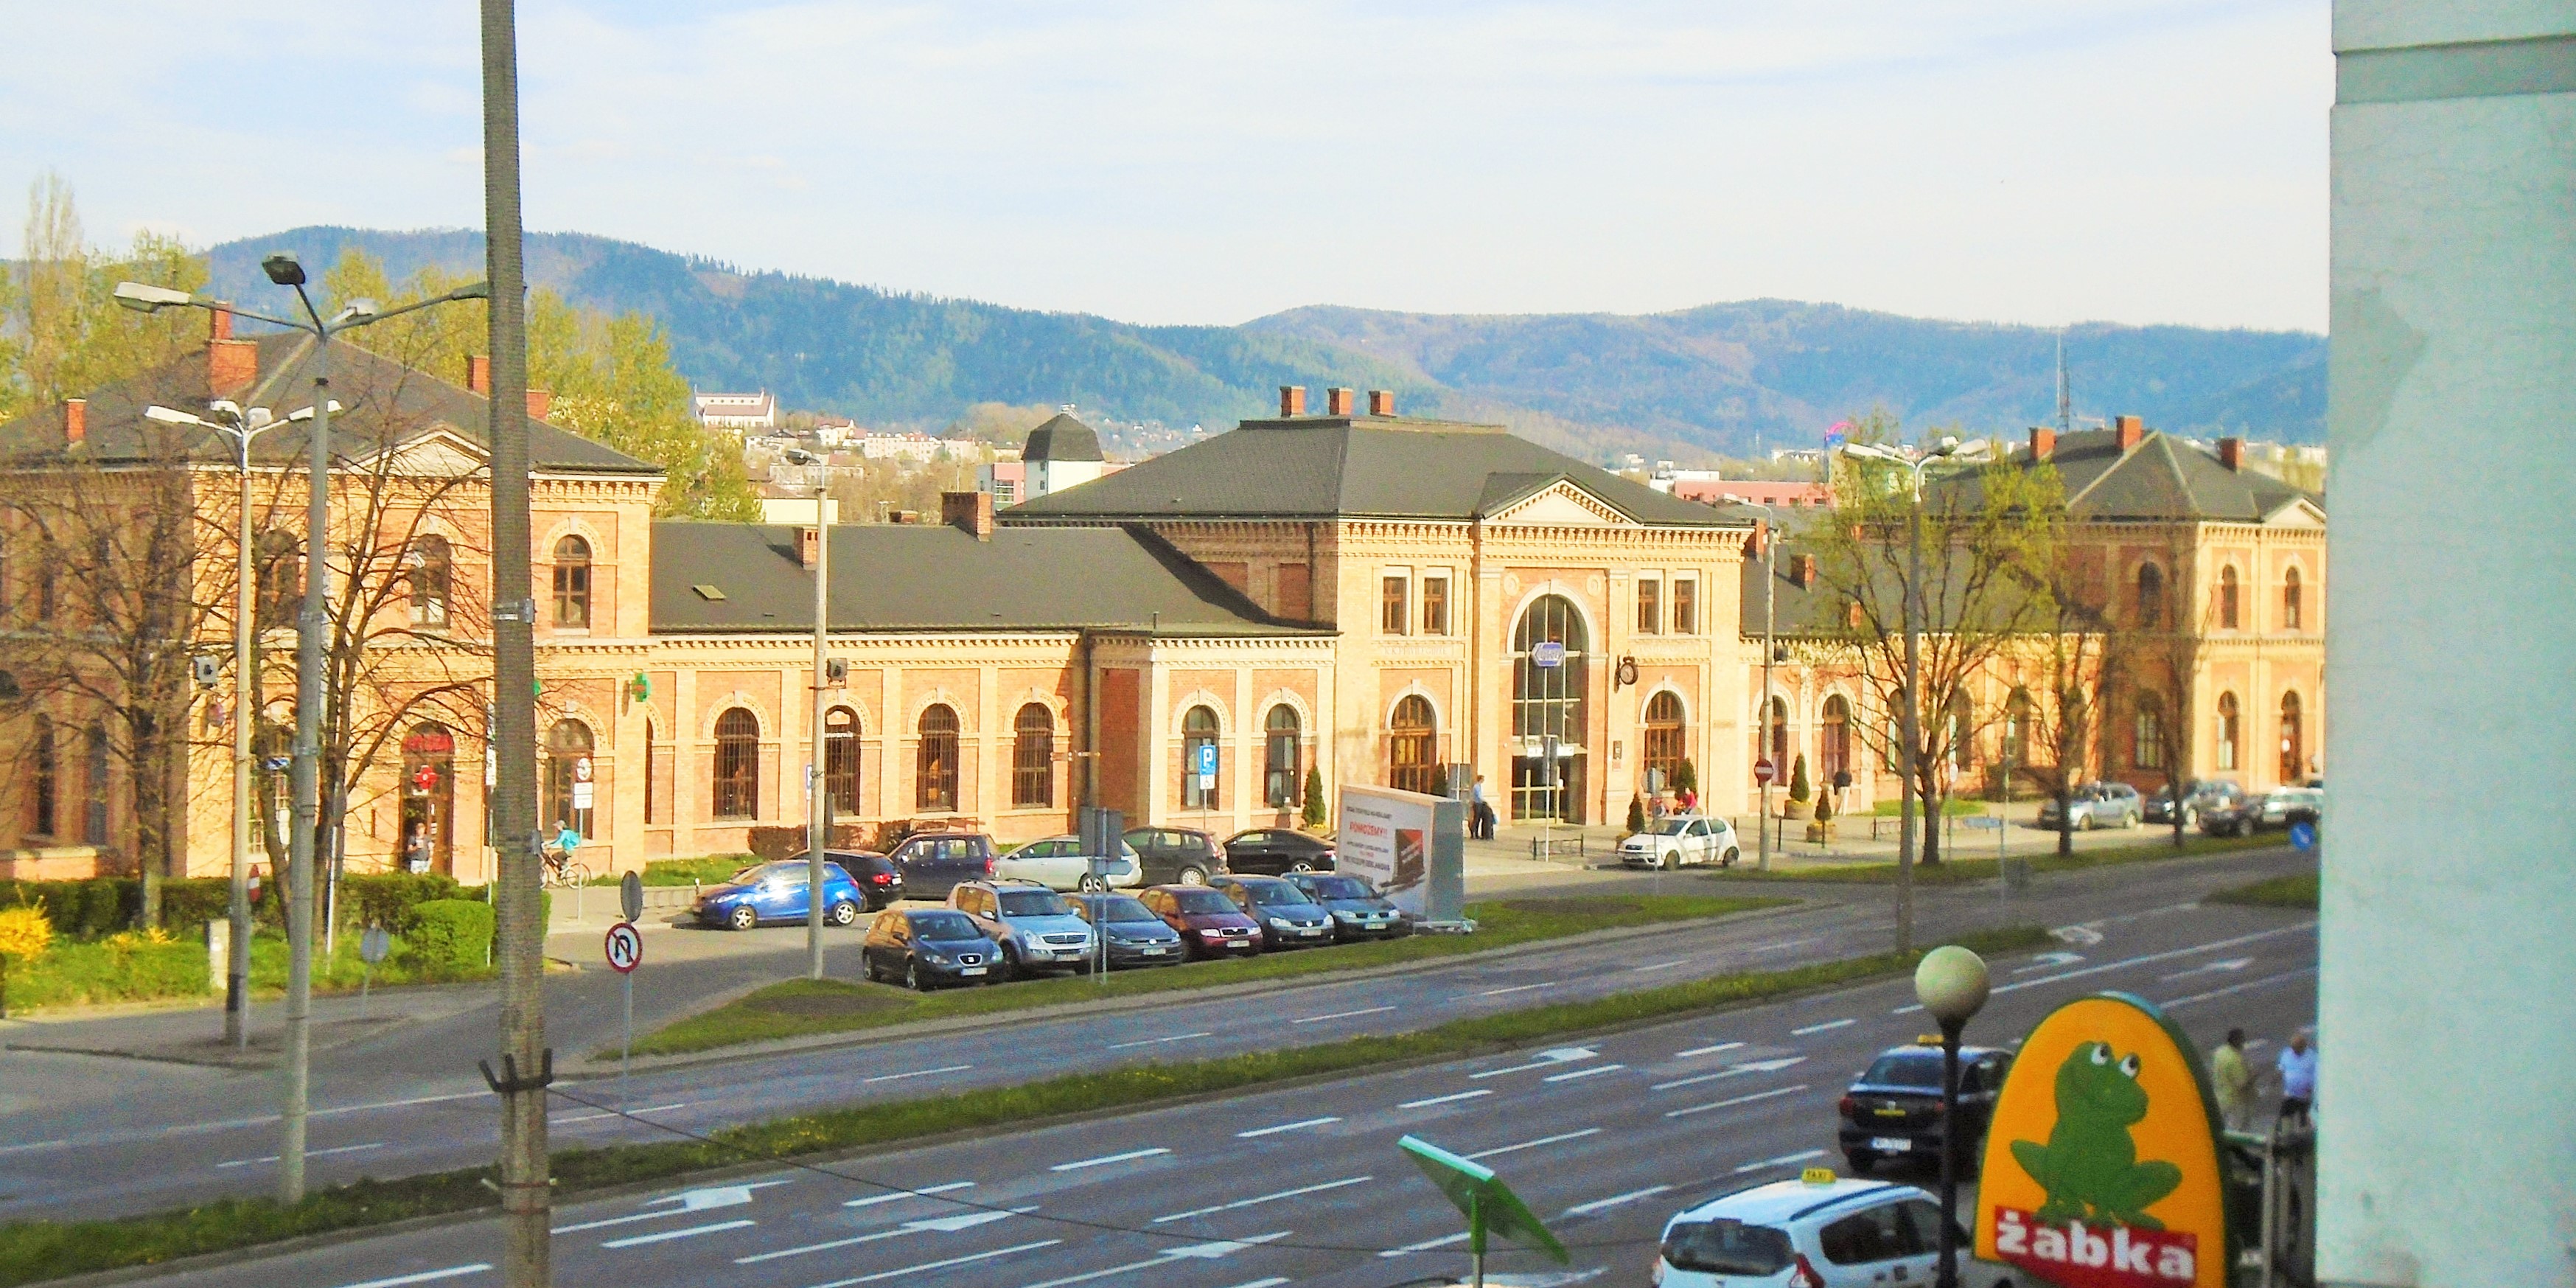 Hlavní nádraží Bielsko Biala Glówna v pohledu z lávky spojující vlakové nádraží s autobusovým